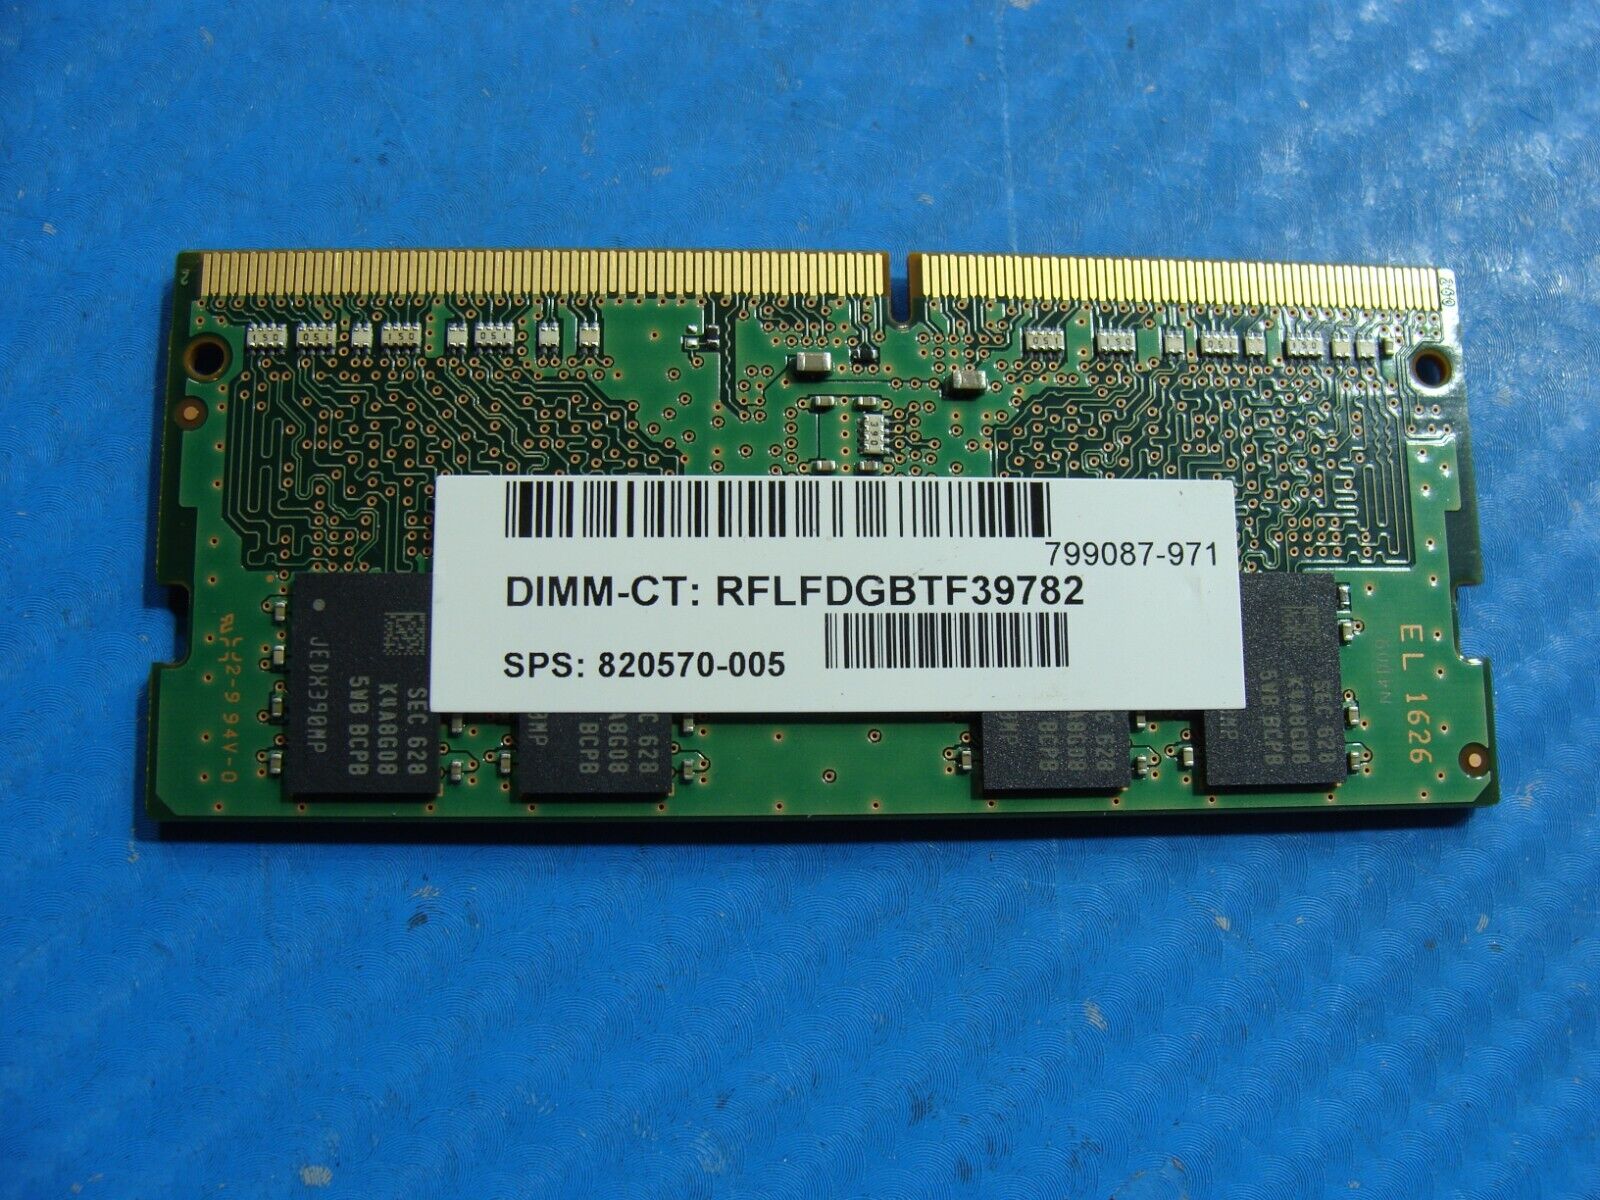 HP m6-aq003dx Samsung 8GB 1Rx8 PC4-2133P Memory RAM SO-DIMM M471A1K43BB0-CPB